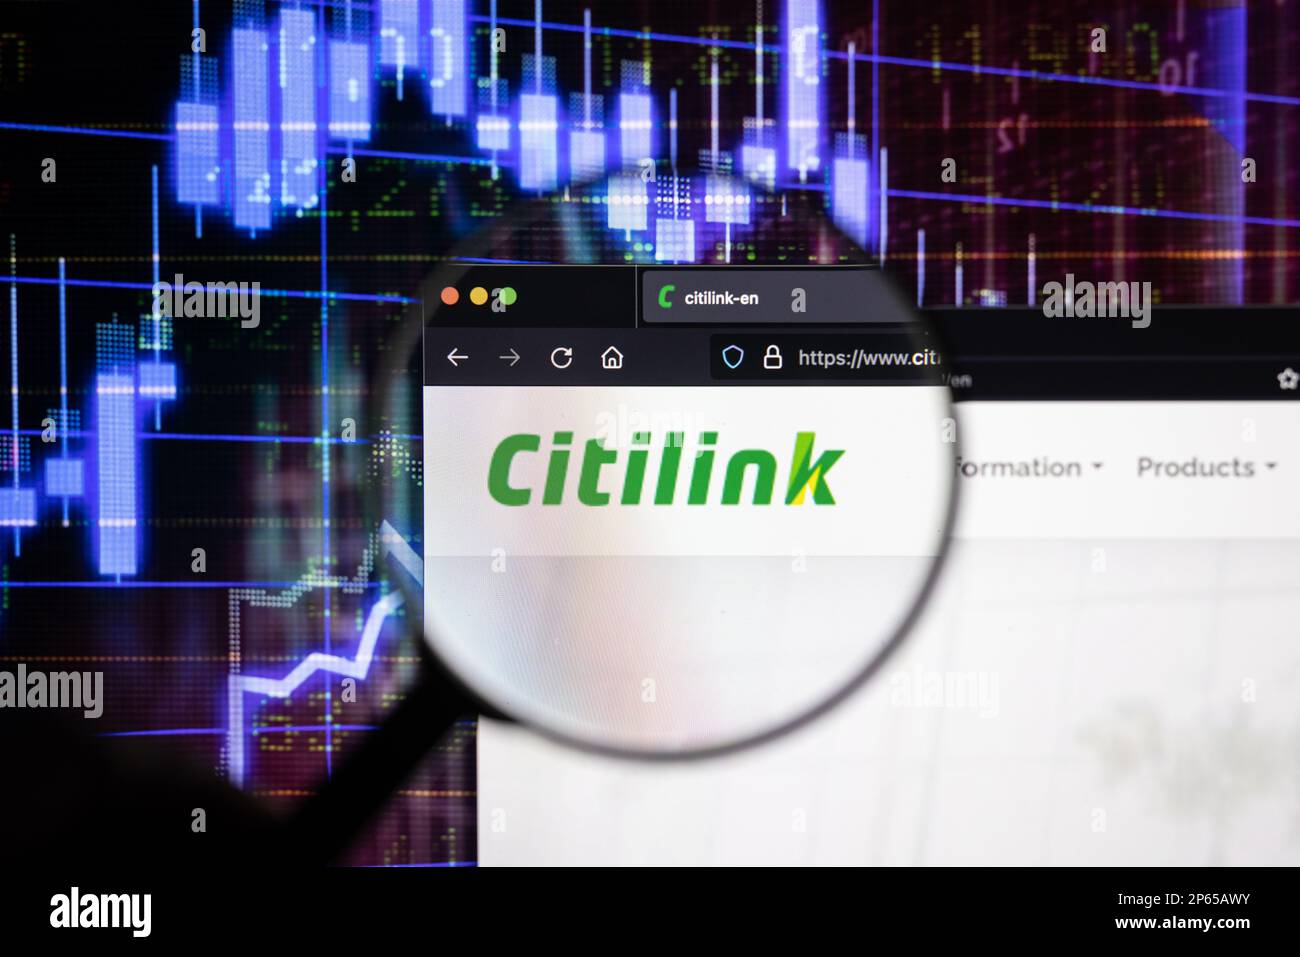 Citiblink compagnia aerea logo su un sito web con blurry mercato azionario sviluppi in background, visto su uno schermo attraverso una lente di ingrandimento Foto Stock